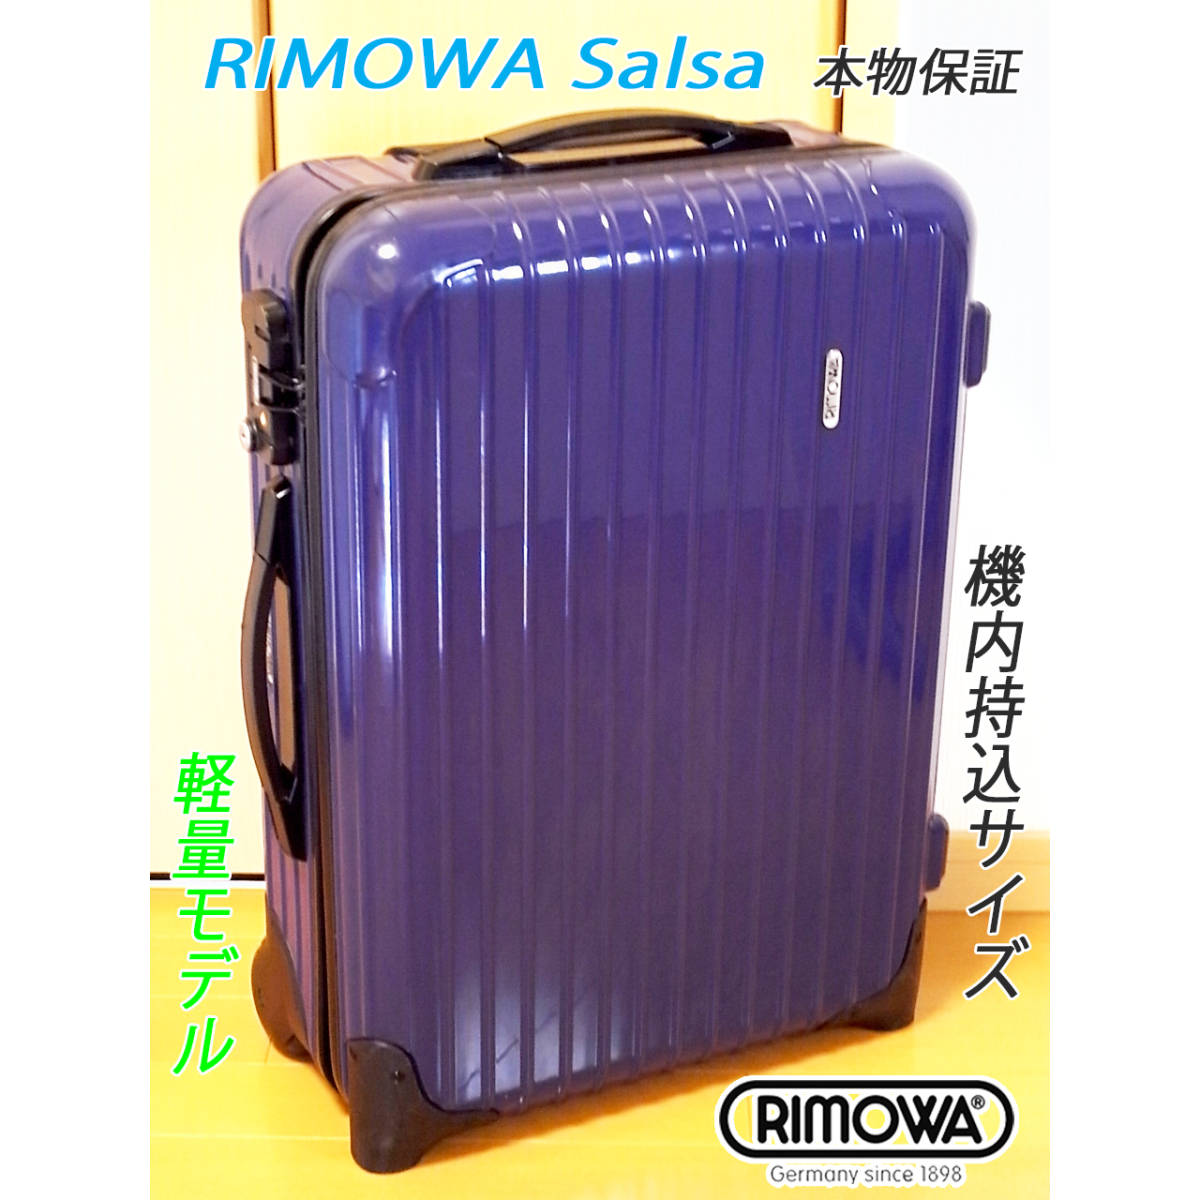 ◇本物! RIMOWA Salsa/リモワ サルサ 35L【機内持込可】超軽量 人気色